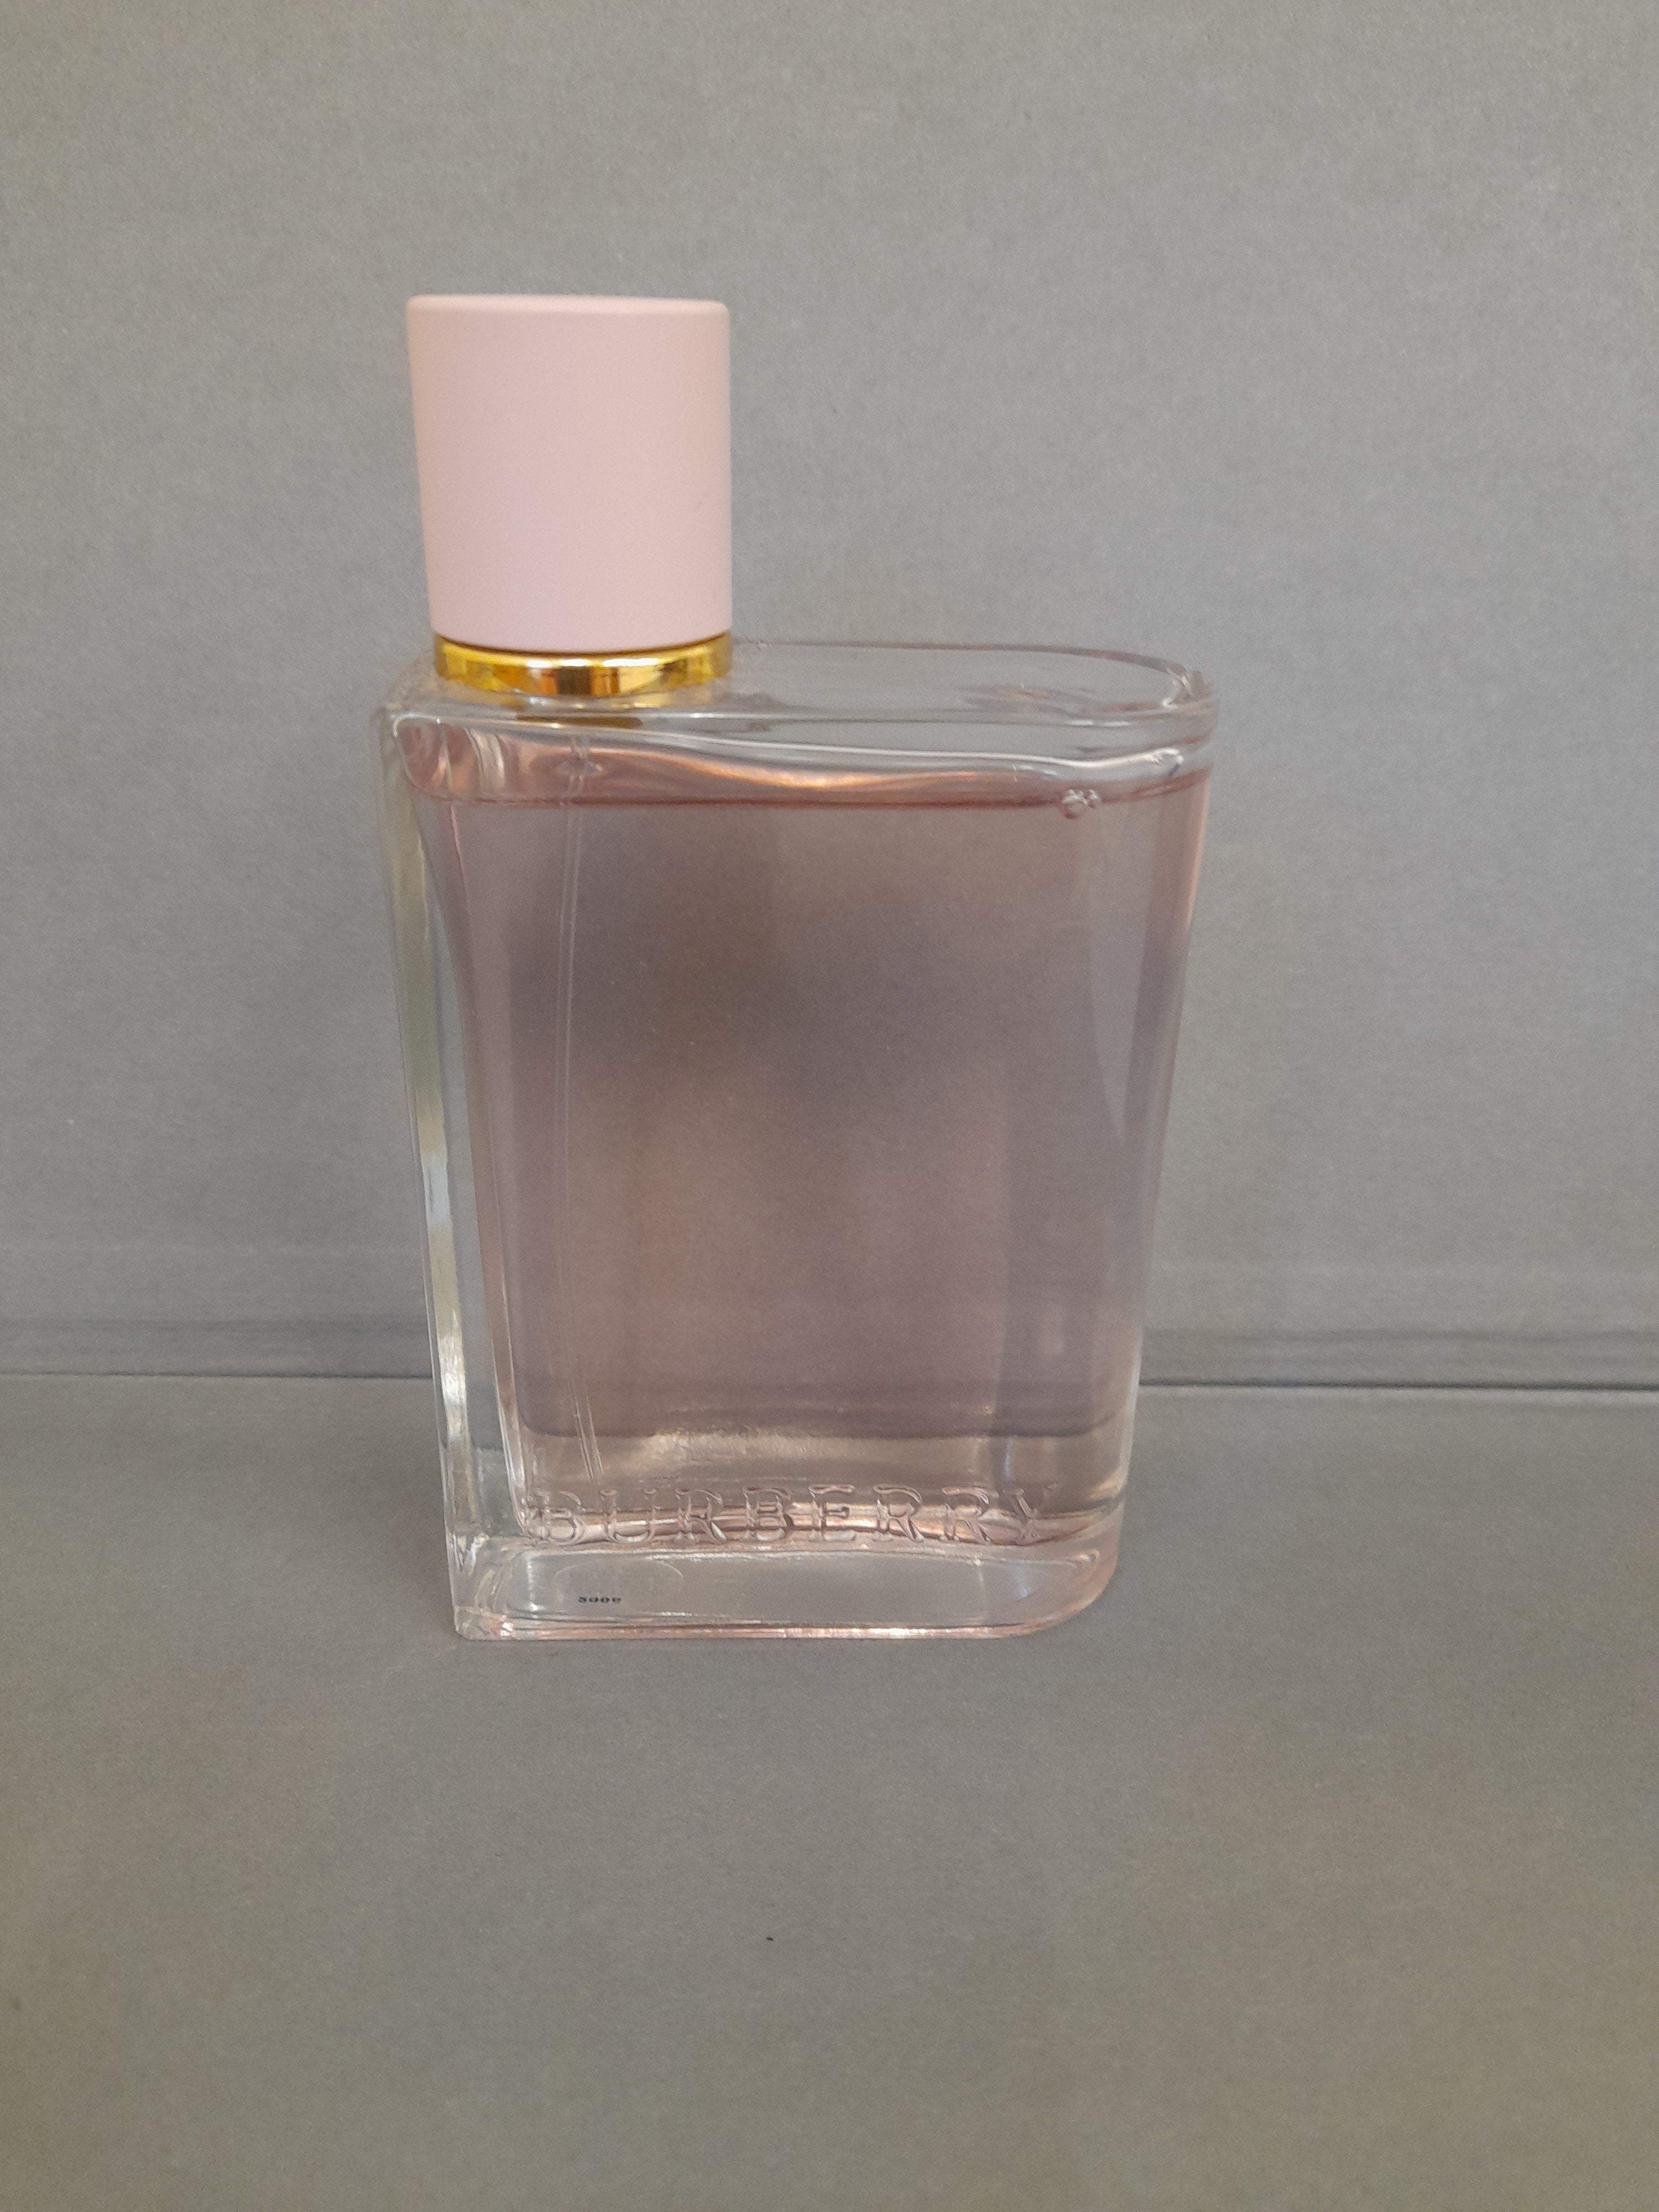 Burberry For Her EDP – Fragrance Samples UK